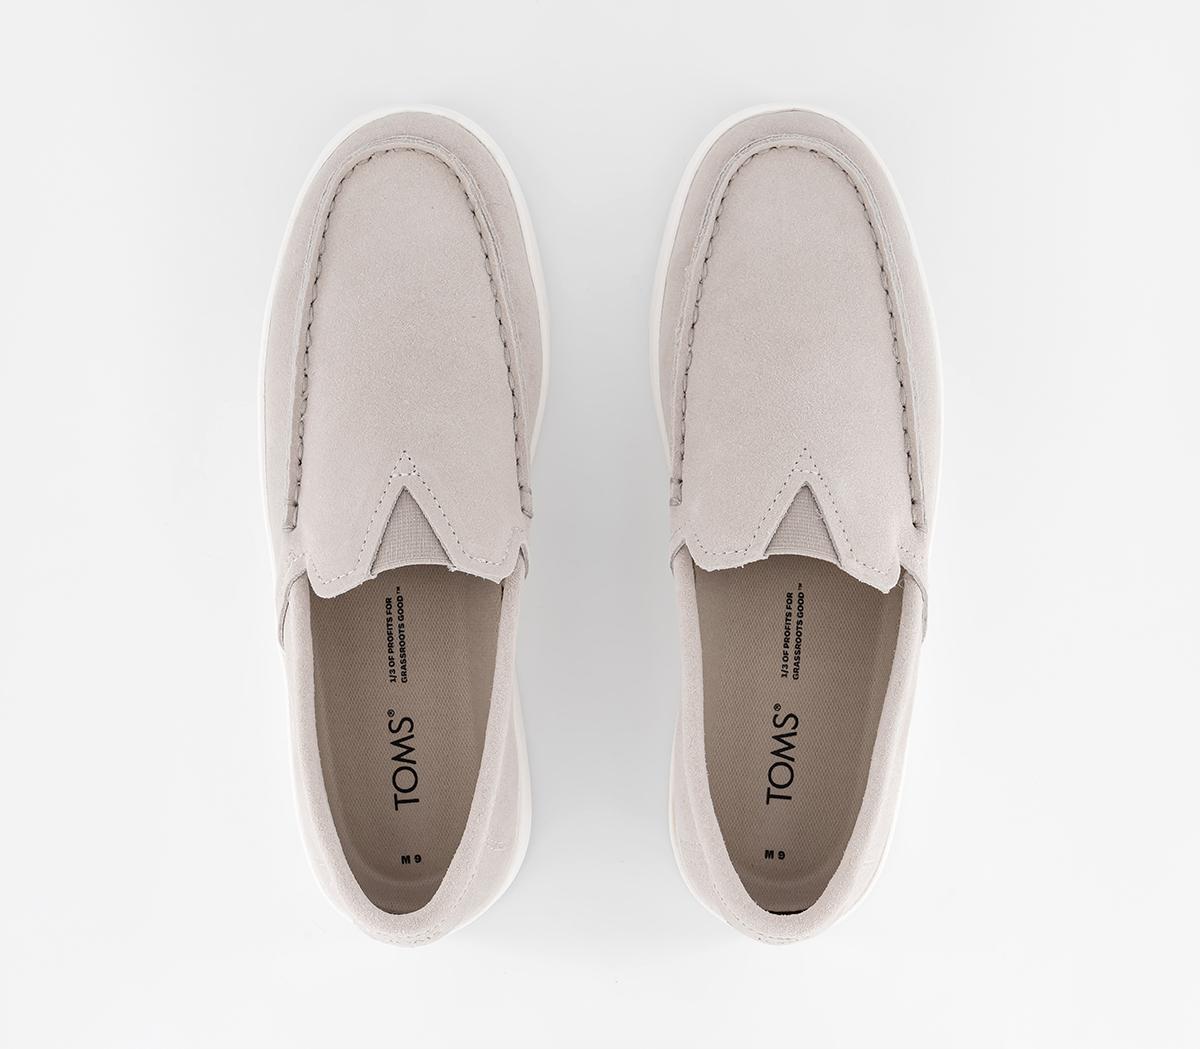 TOMS Trvl Lite Loafers Pebble Grey Suede - Men’s Smart Shoes